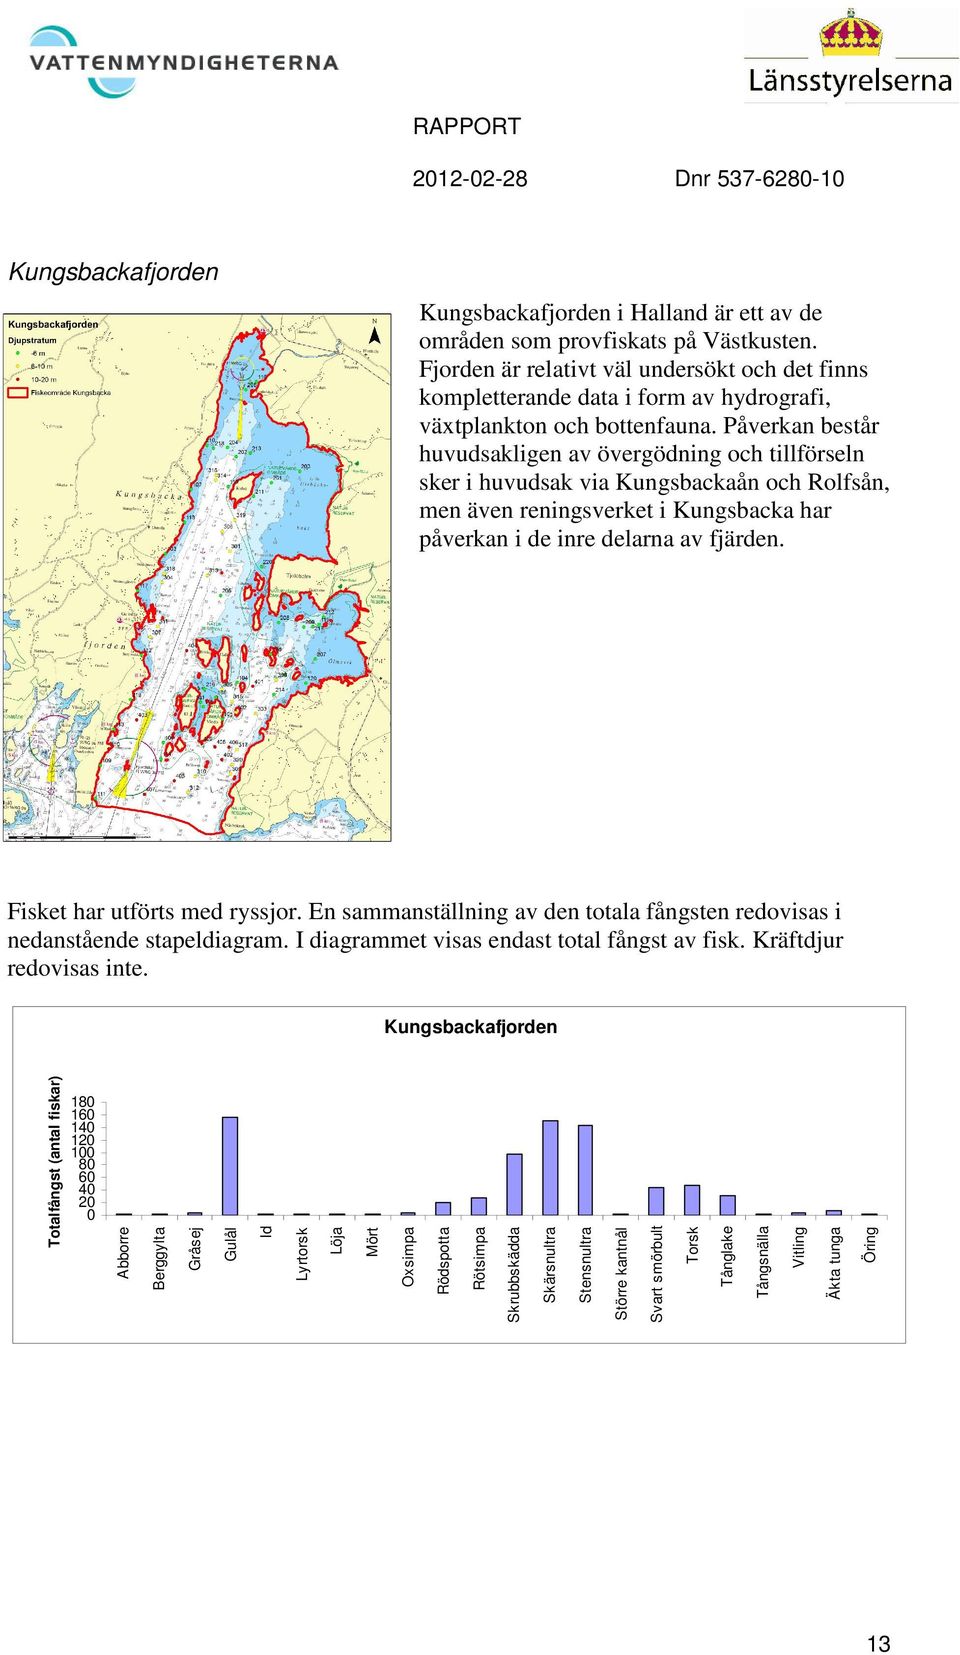 Påverkan består huvudsakligen av övergödning och tillförseln sker i huvudsak via Kungsbackaån och Rolfsån, men även reningsverket i Kungsbacka har påverkan i de inre delarna av fjärden.